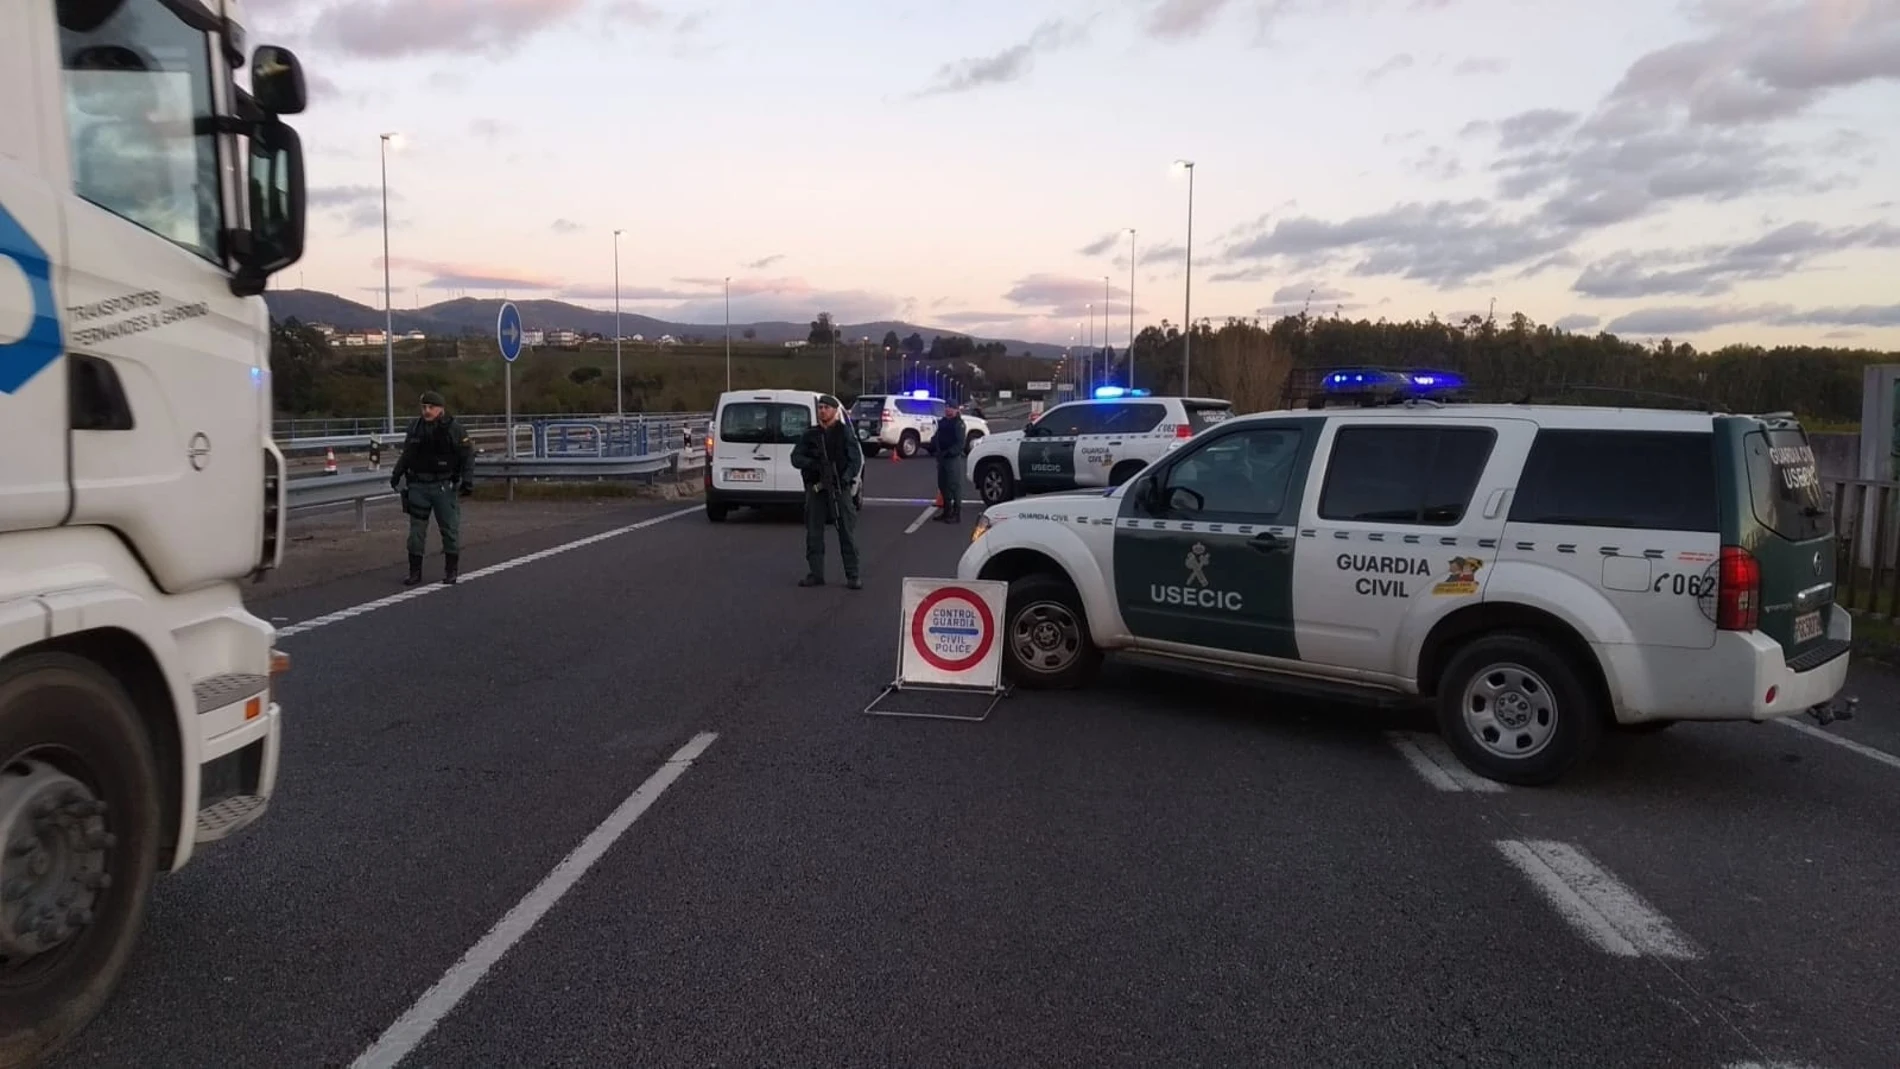 Control de tráfico de la Guardia Civil durante estado alarma en CantabriaDELEGACIÓN GOBIERNO24/03/2020